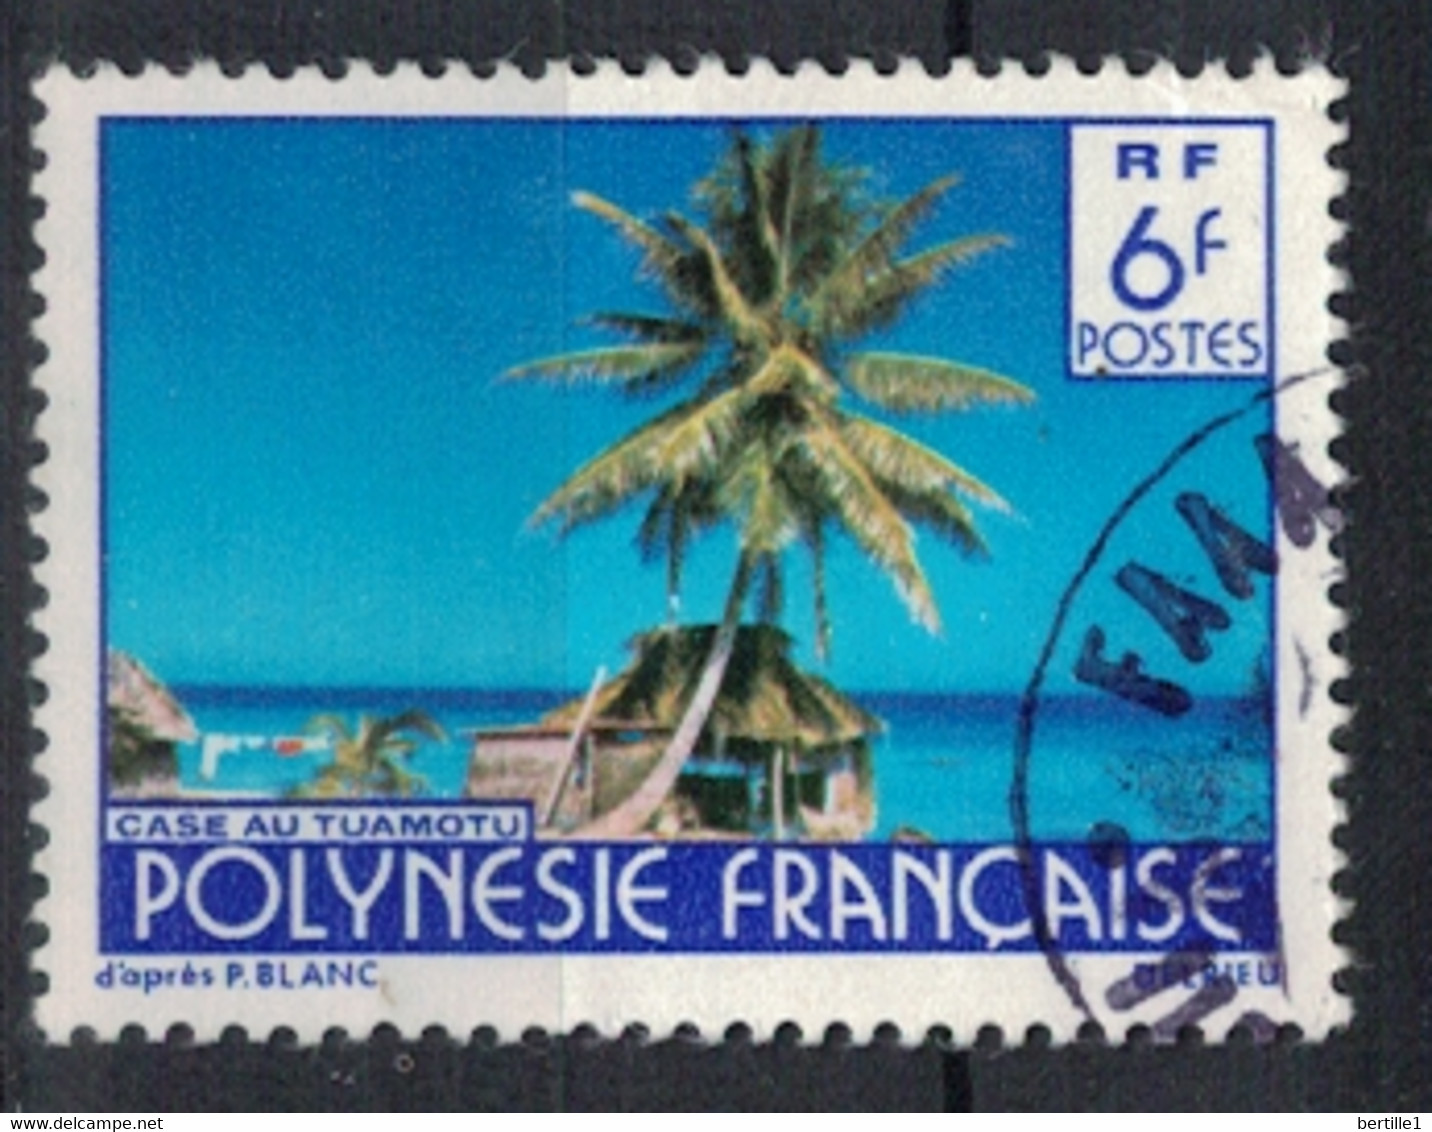 POLYNESIE FRANCAISE           N°  YVERT  137   OBLITERE     ( OB    06/ 37 ) - Gebraucht